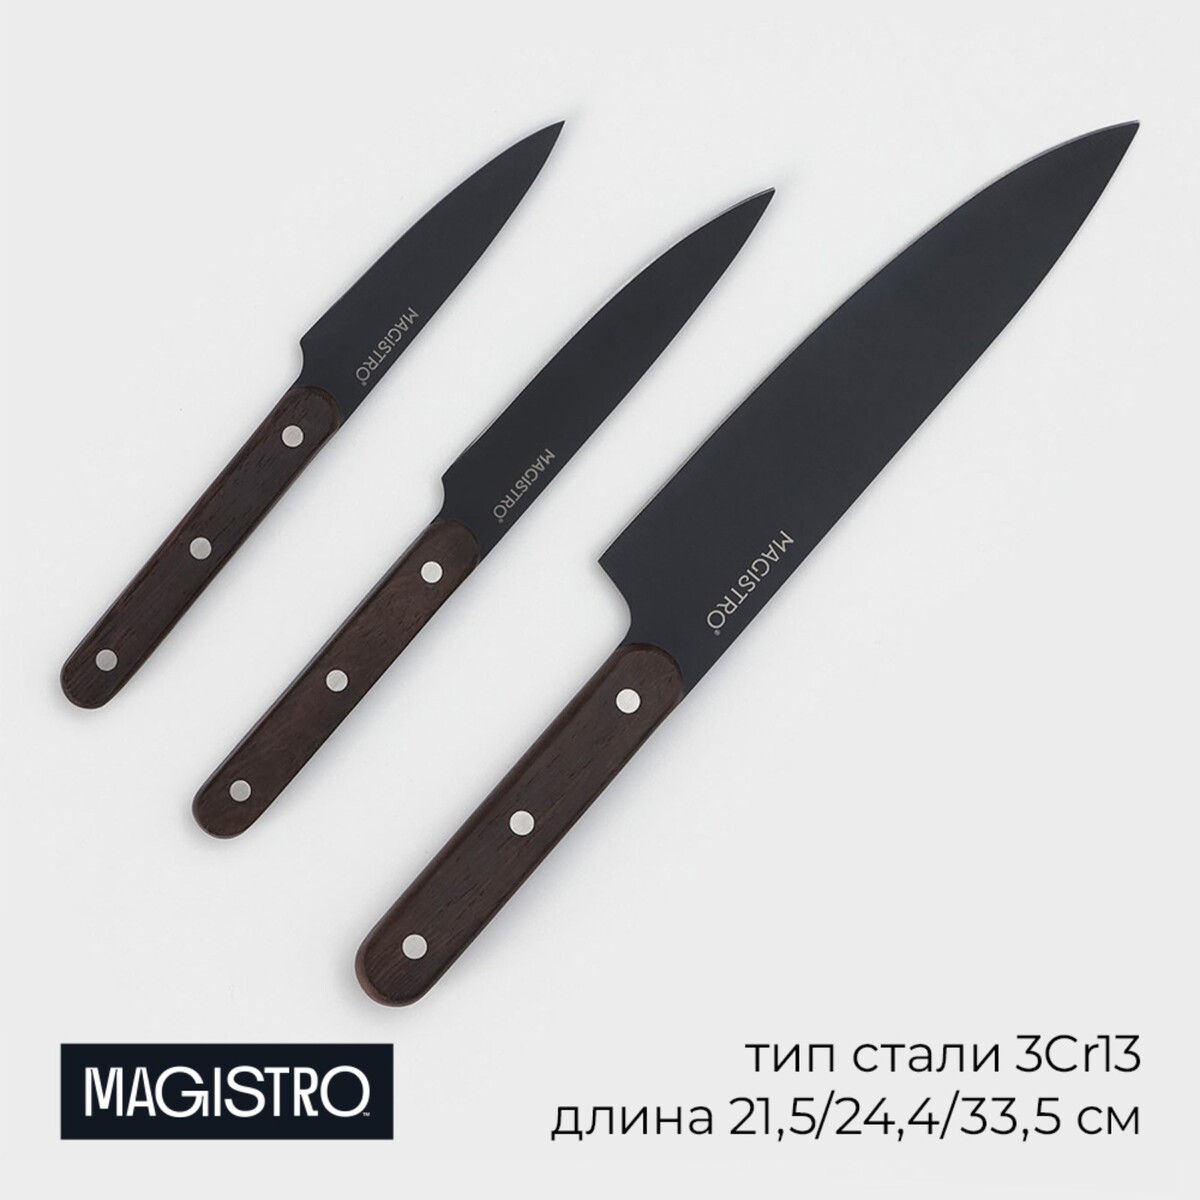 Набор кухонных ножей magistro dark wood, 3 предмета: лезвие 10,2 см, 12,7 см, 19 см, цвет черный нож шеф magistro ardone лезвие 20 см